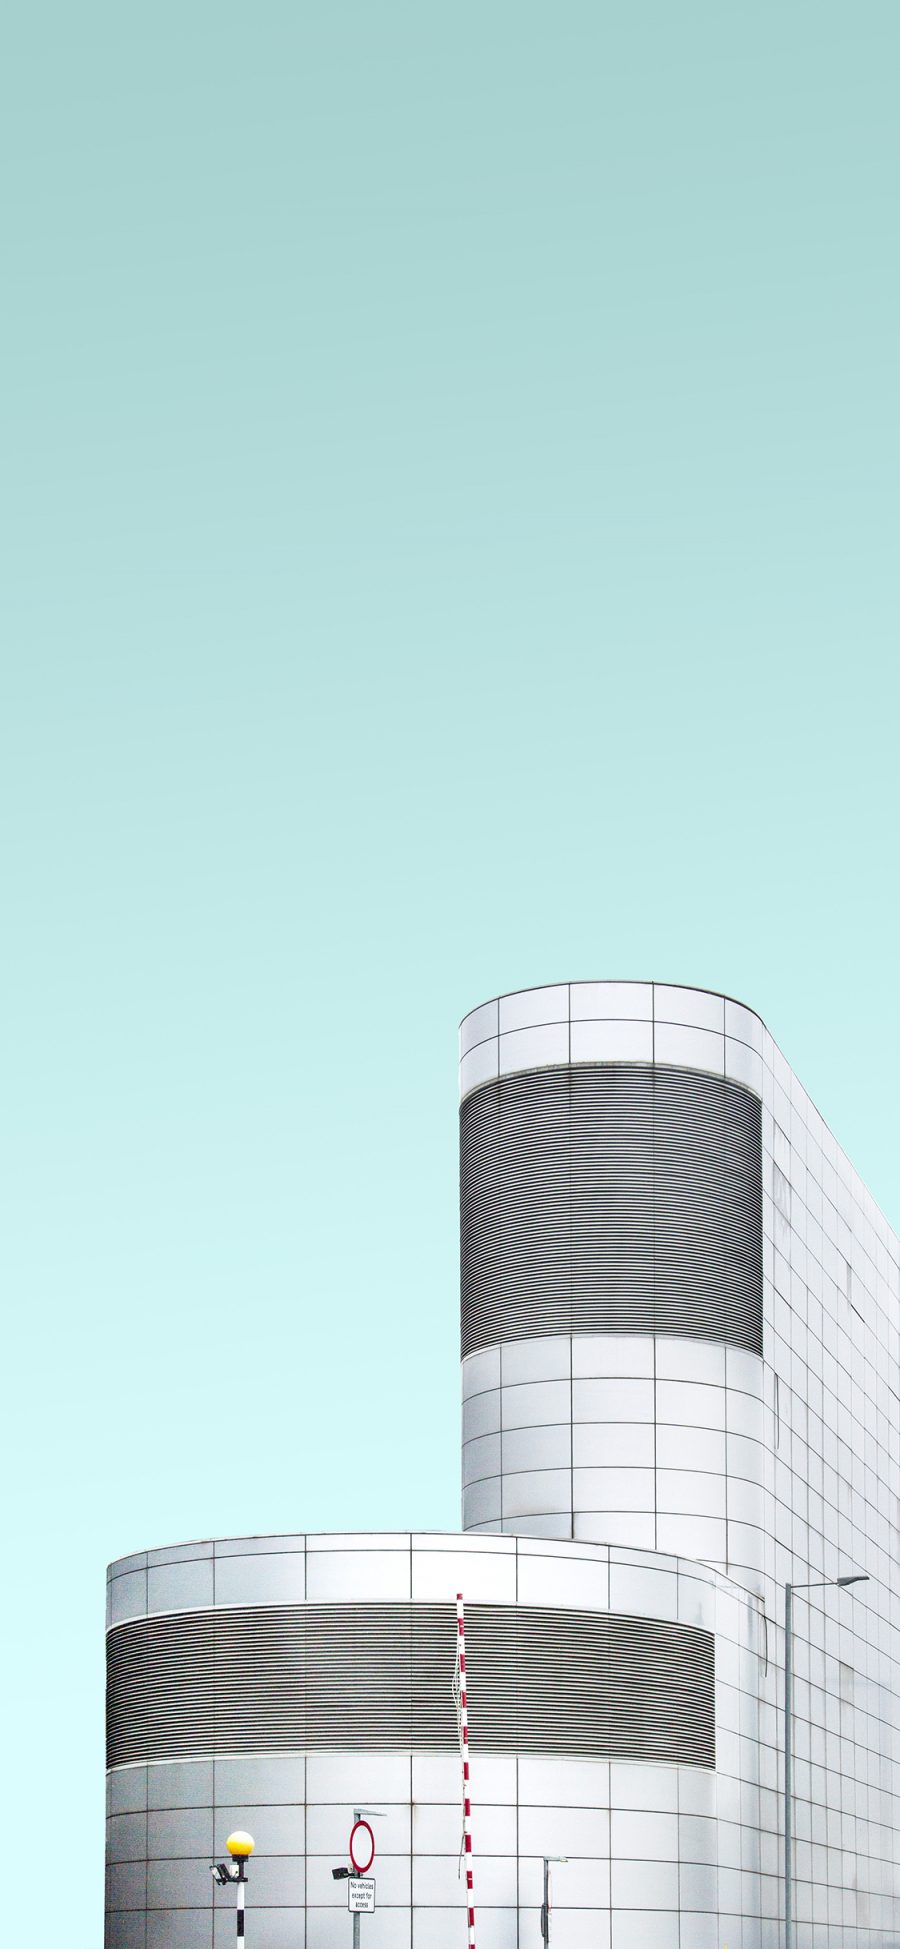 [2436×1125]大楼 天空 建筑 简约 苹果手机壁纸图片